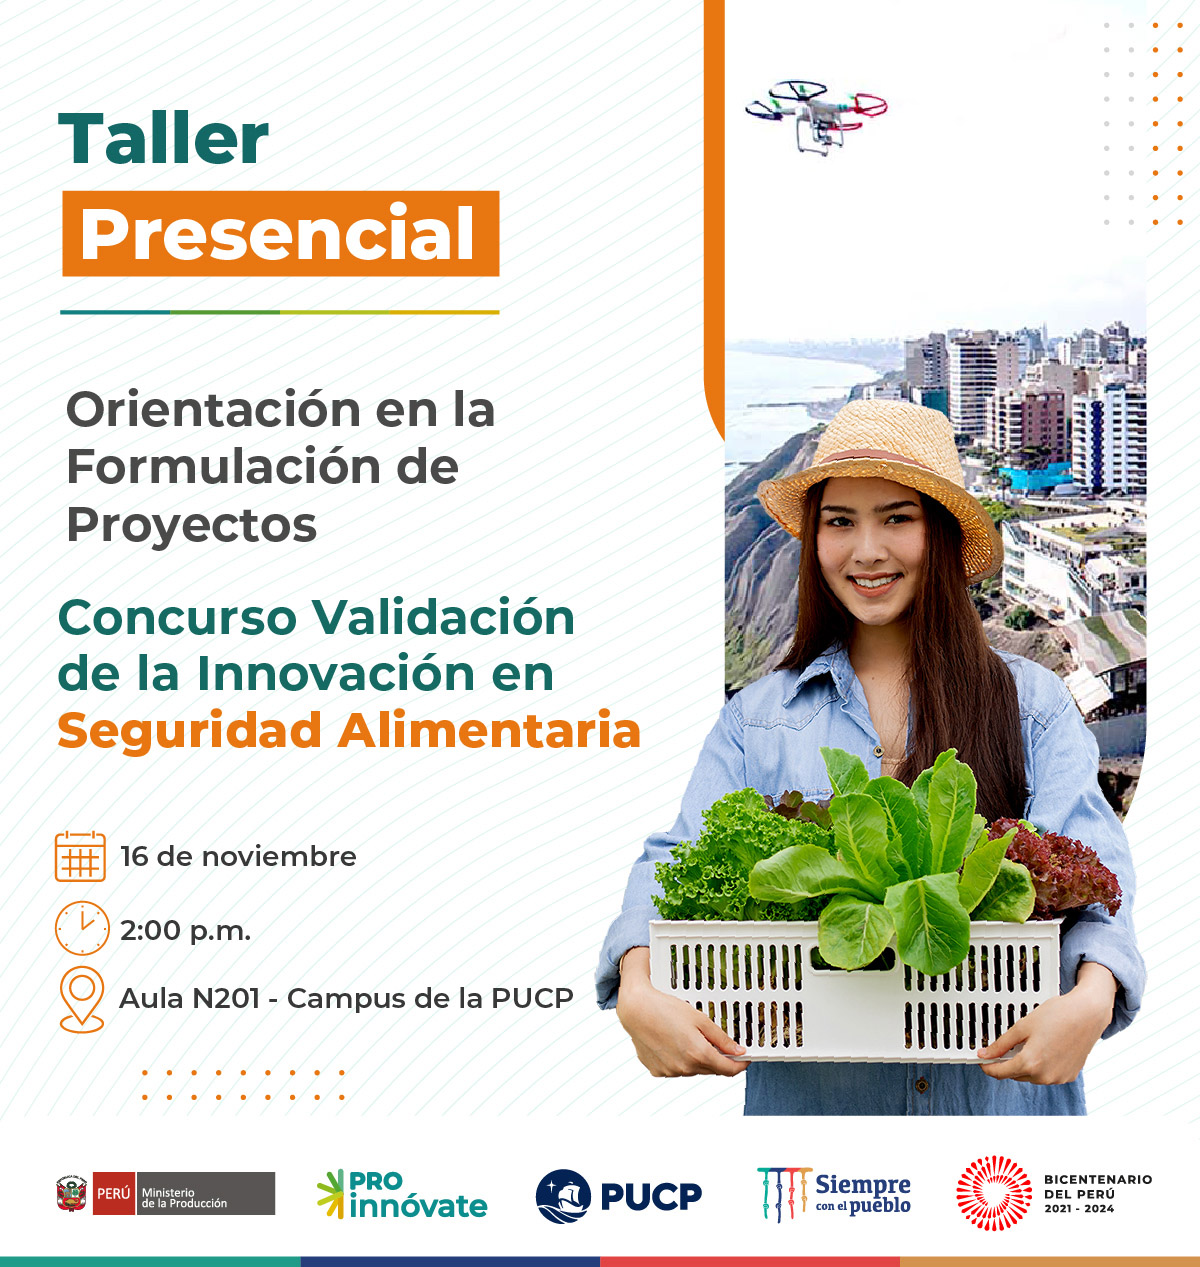 Lima: Taller presencial de orientación en la formulación de Proyectos para postular al concurso de Validación de la Innovación en Seguridad Alimentaria